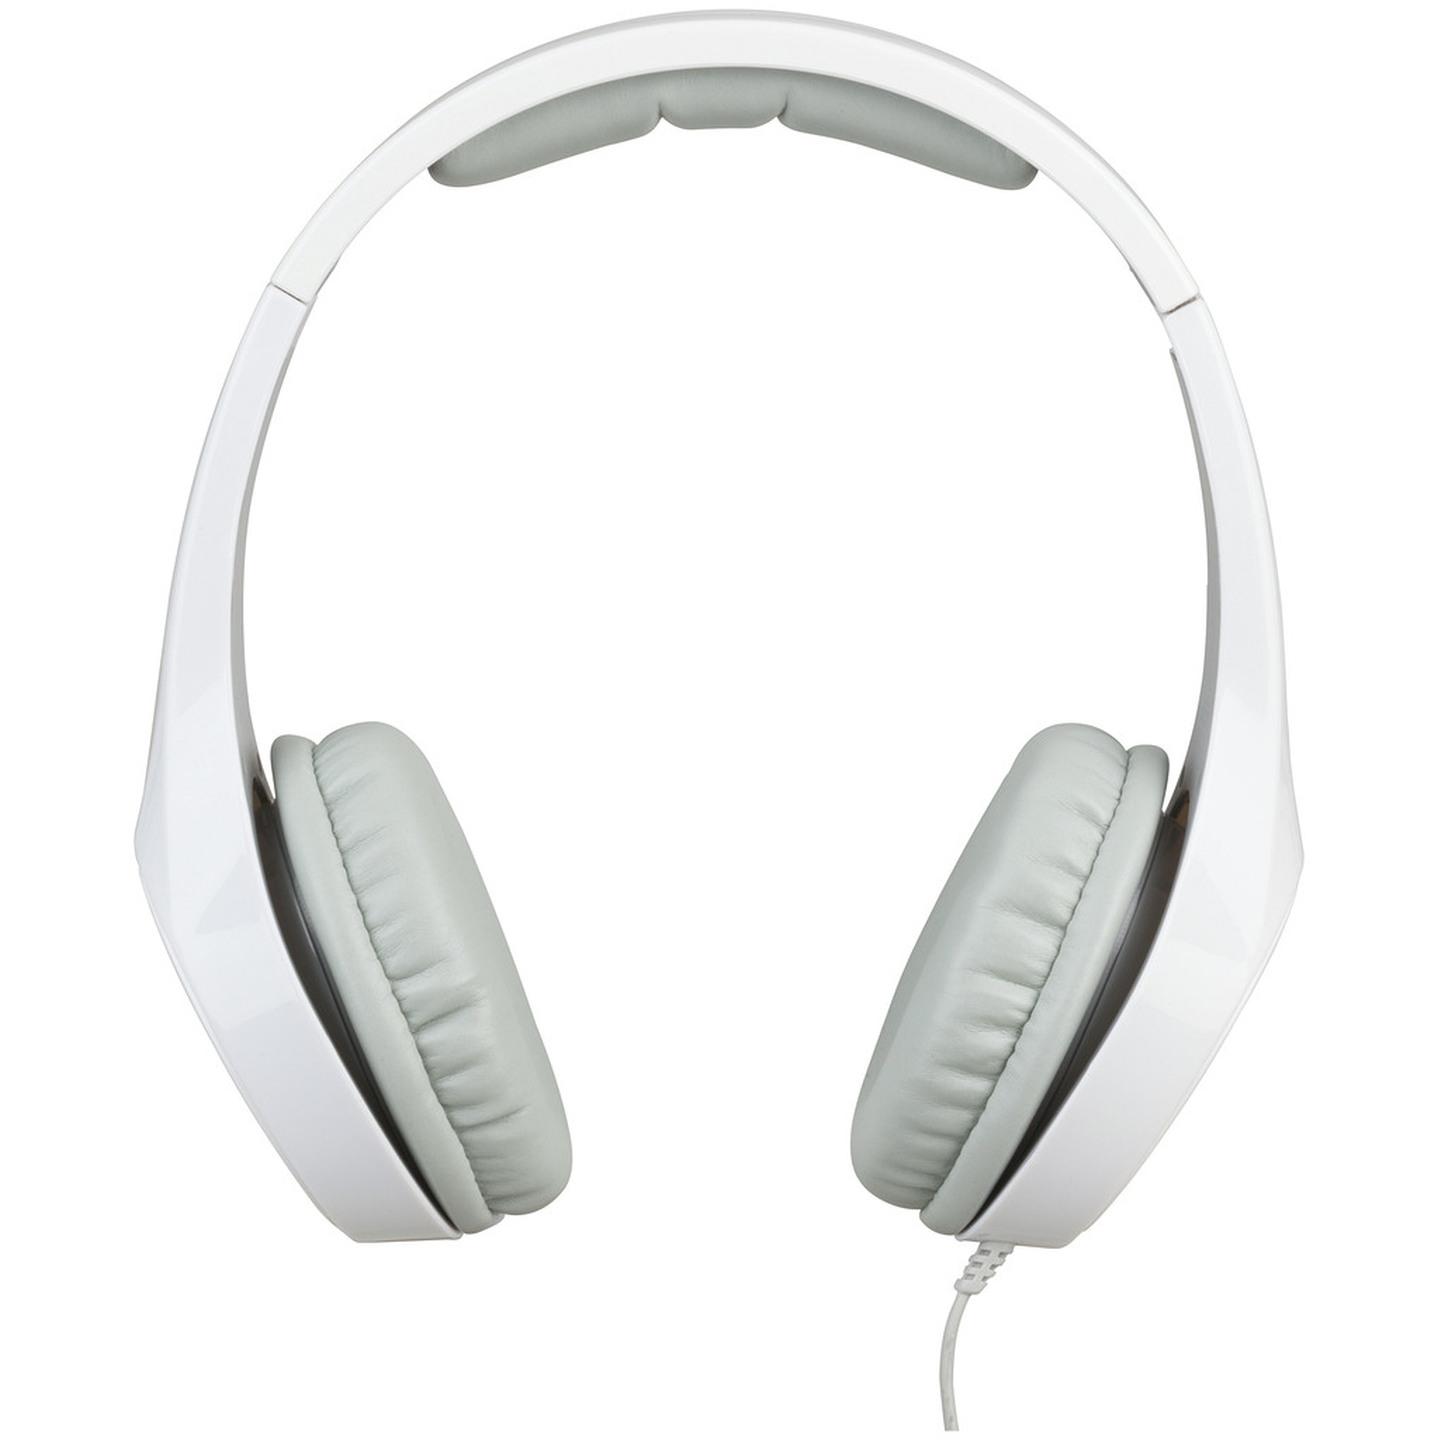 Gloss White Hi-Fidelity Stereo Headphones